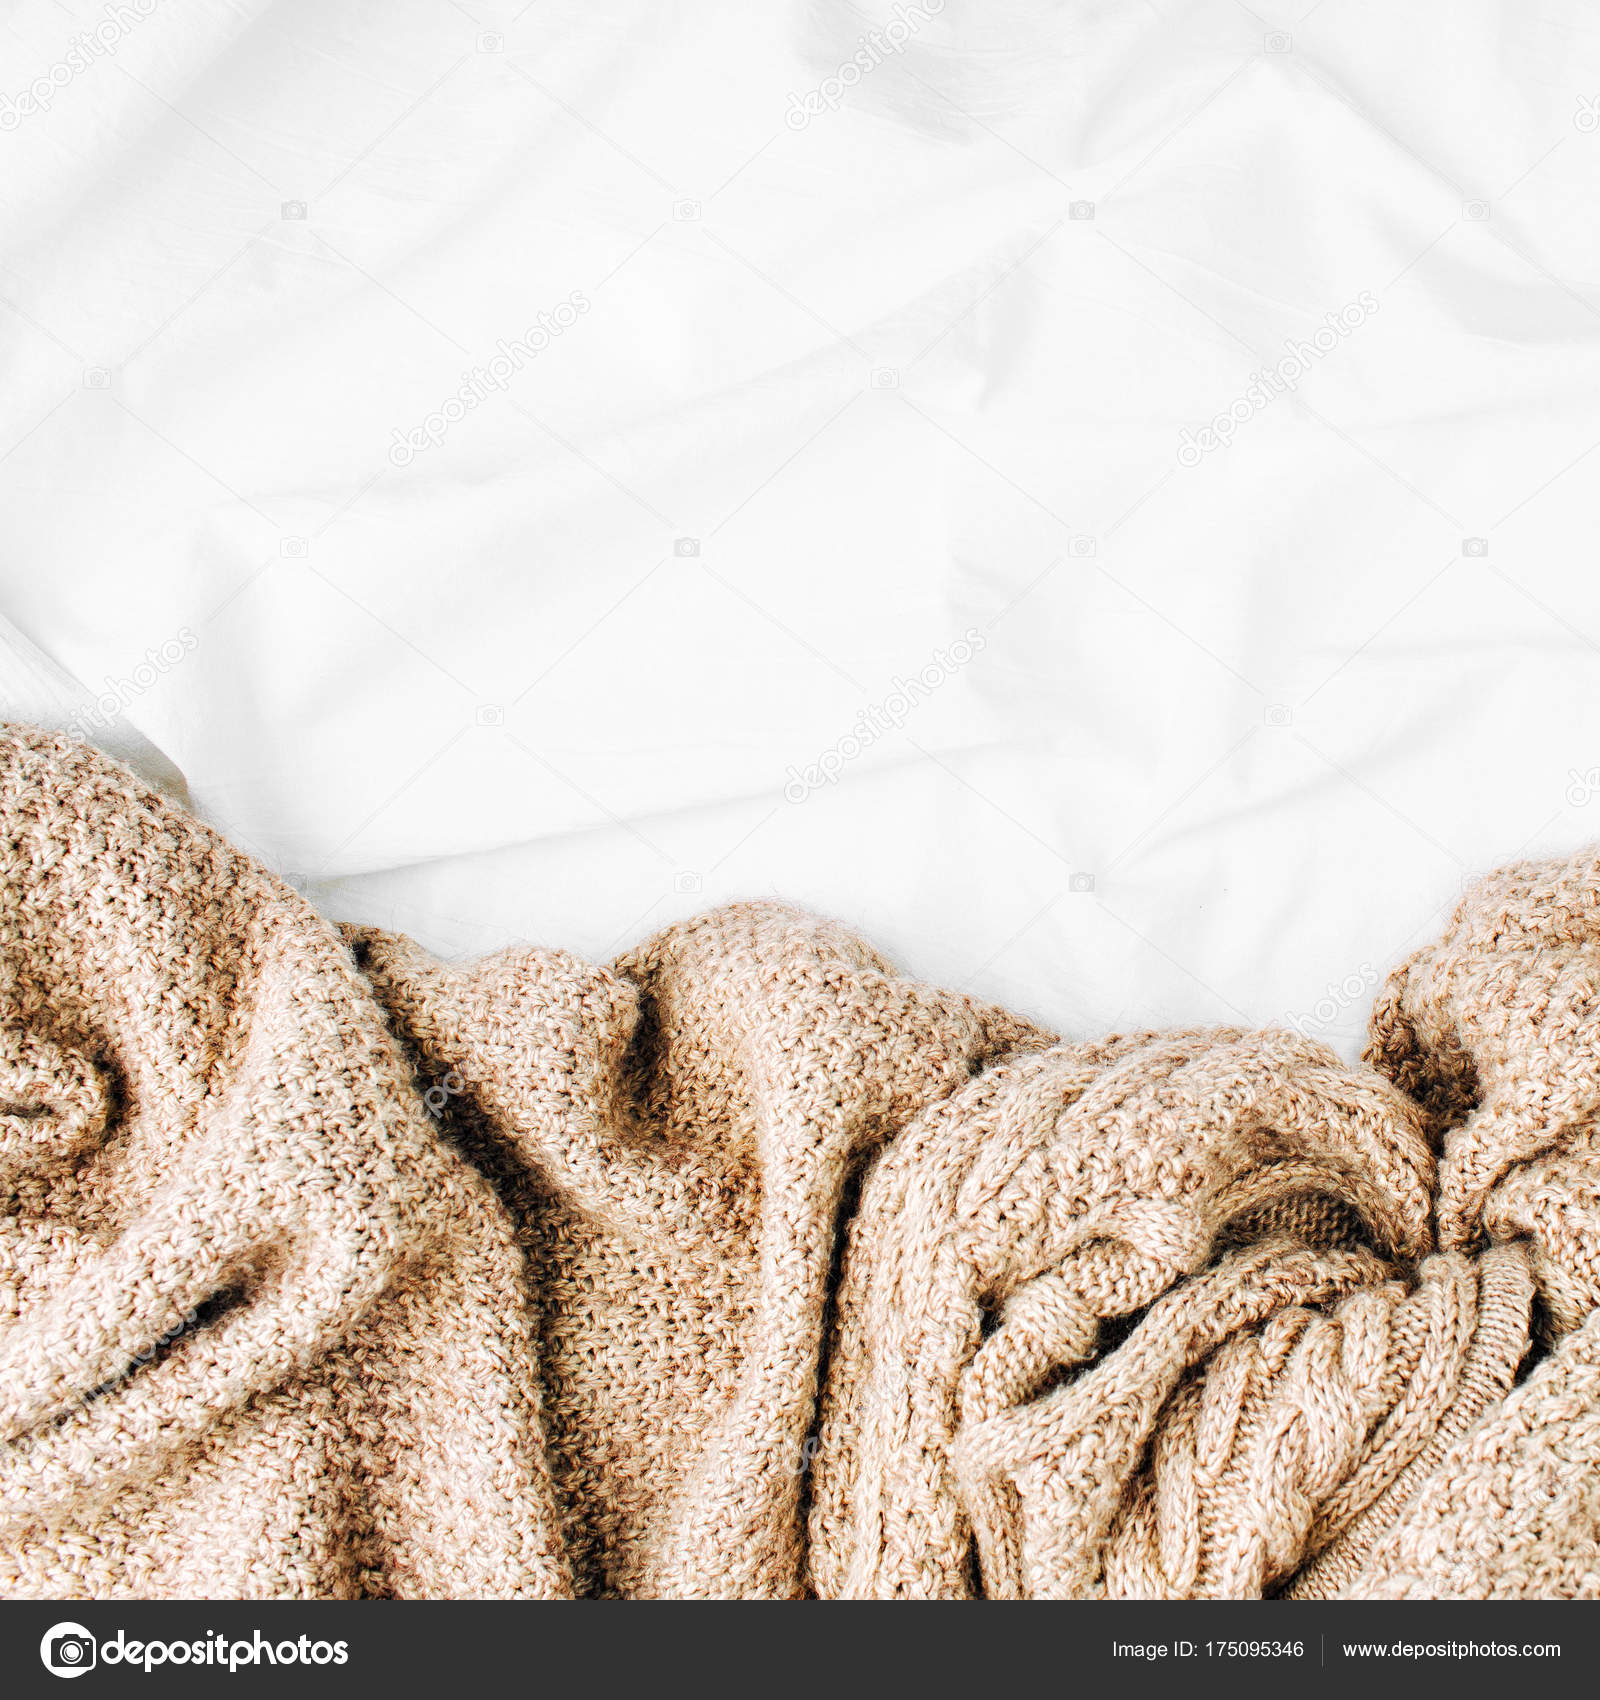 Beyaz Yatak Örtüsü Ile Yatakta Sıcak Ekose Stok fotoğrafçılık